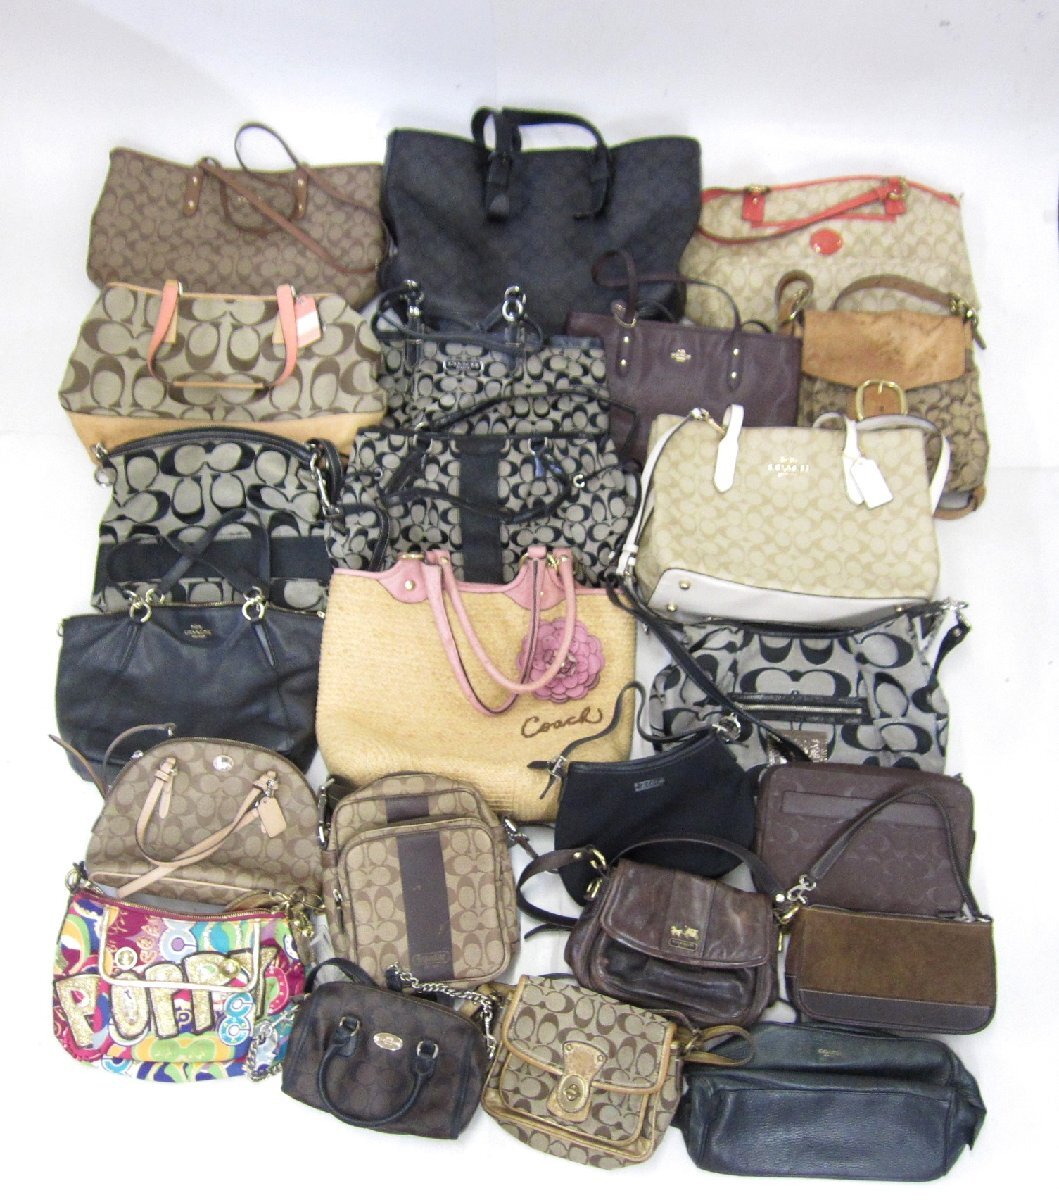 COACH Coach handbag / tote bag other bag summarize * junk #U2507